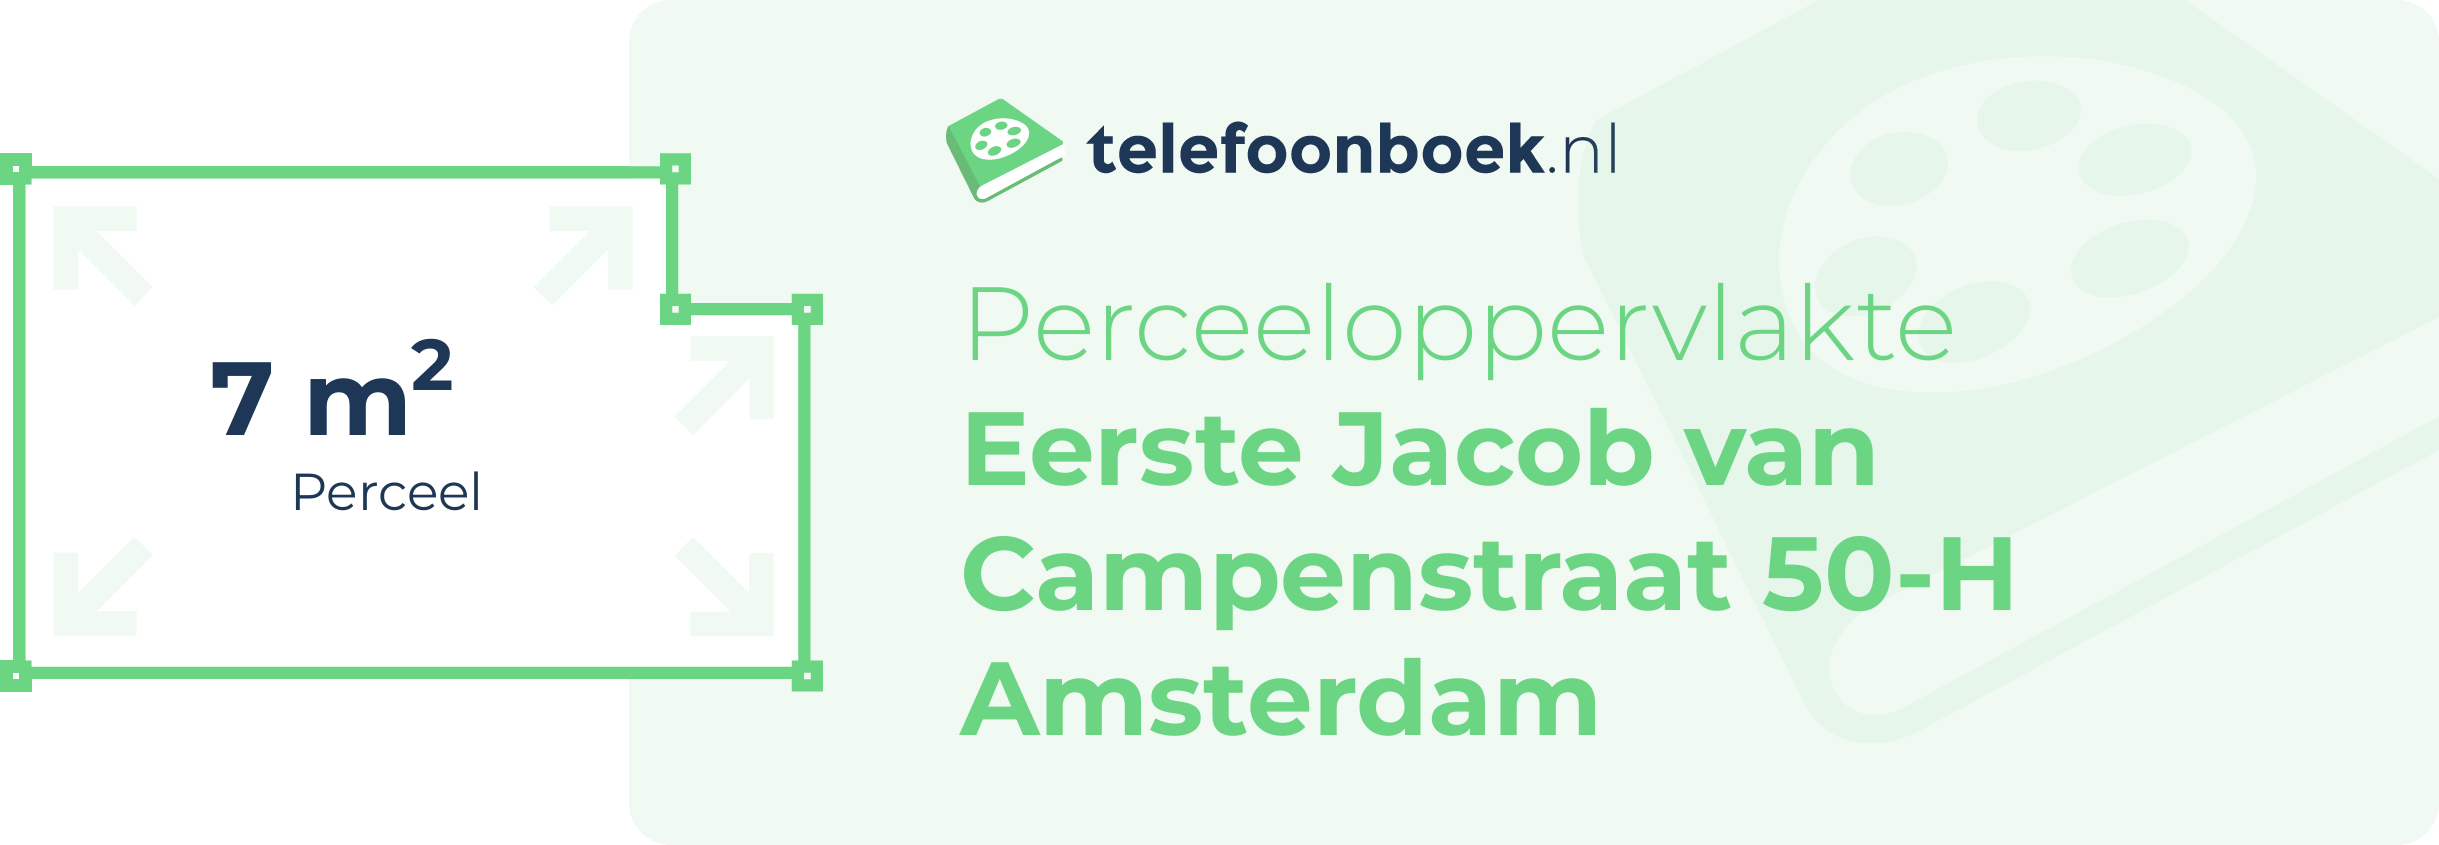 Perceeloppervlakte Eerste Jacob Van Campenstraat 50-H Amsterdam